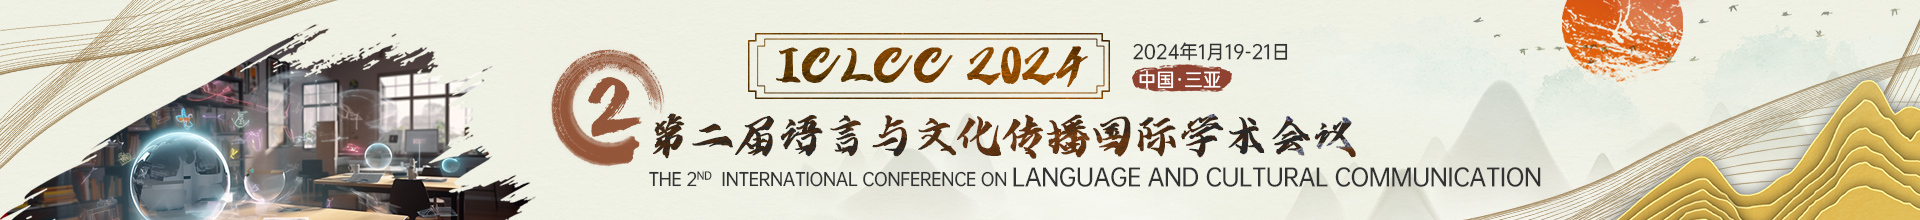 1月三亚-ICLCC-2024-学术会议云.jpg